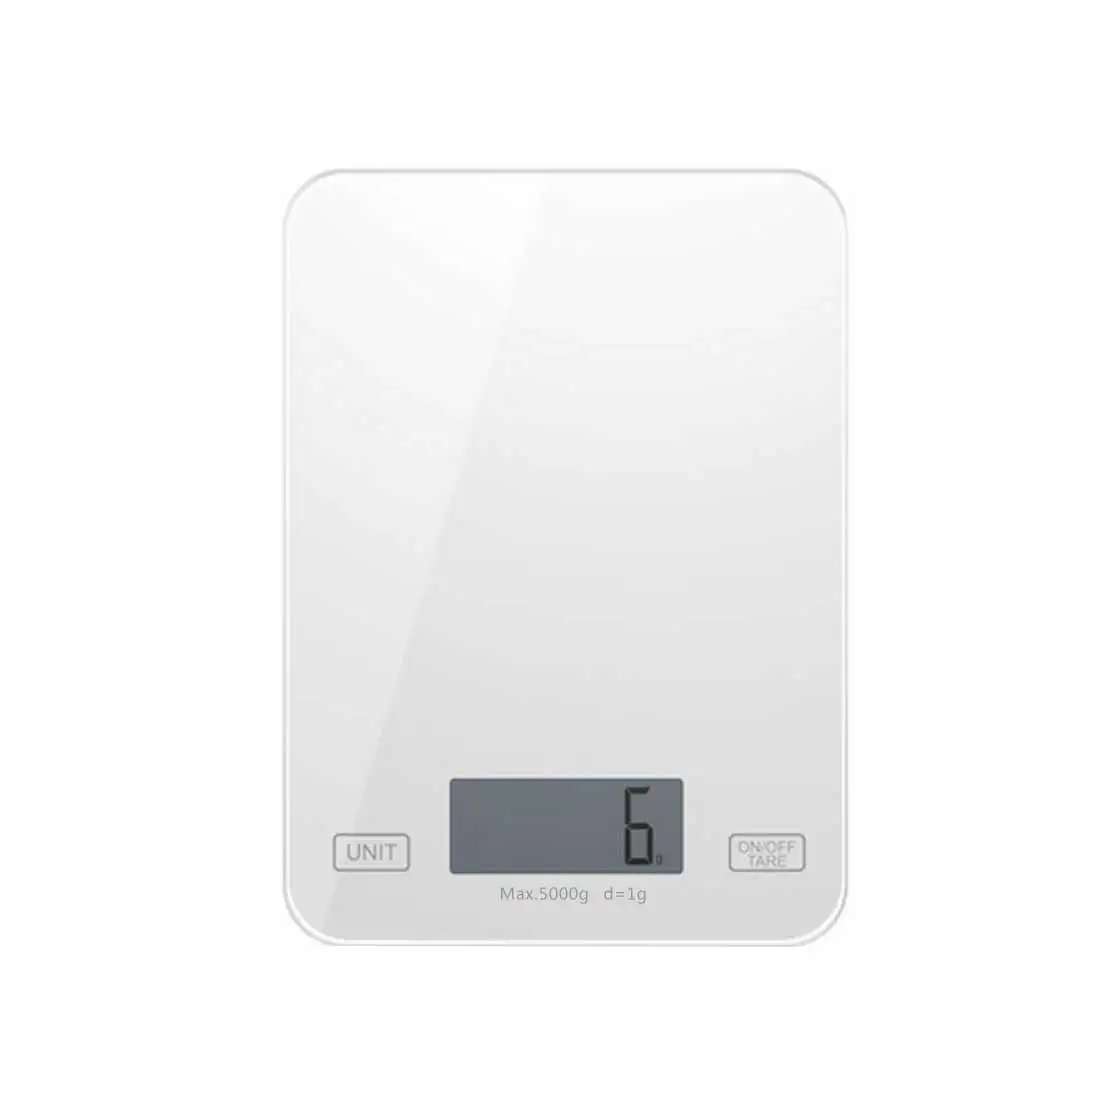 5 кг/1 г кухонные весы портативные мини Цифровые высокоточные весы для приготовления пищи и чая Электронные карманные профессиональные весы машины - Цвет: Белый